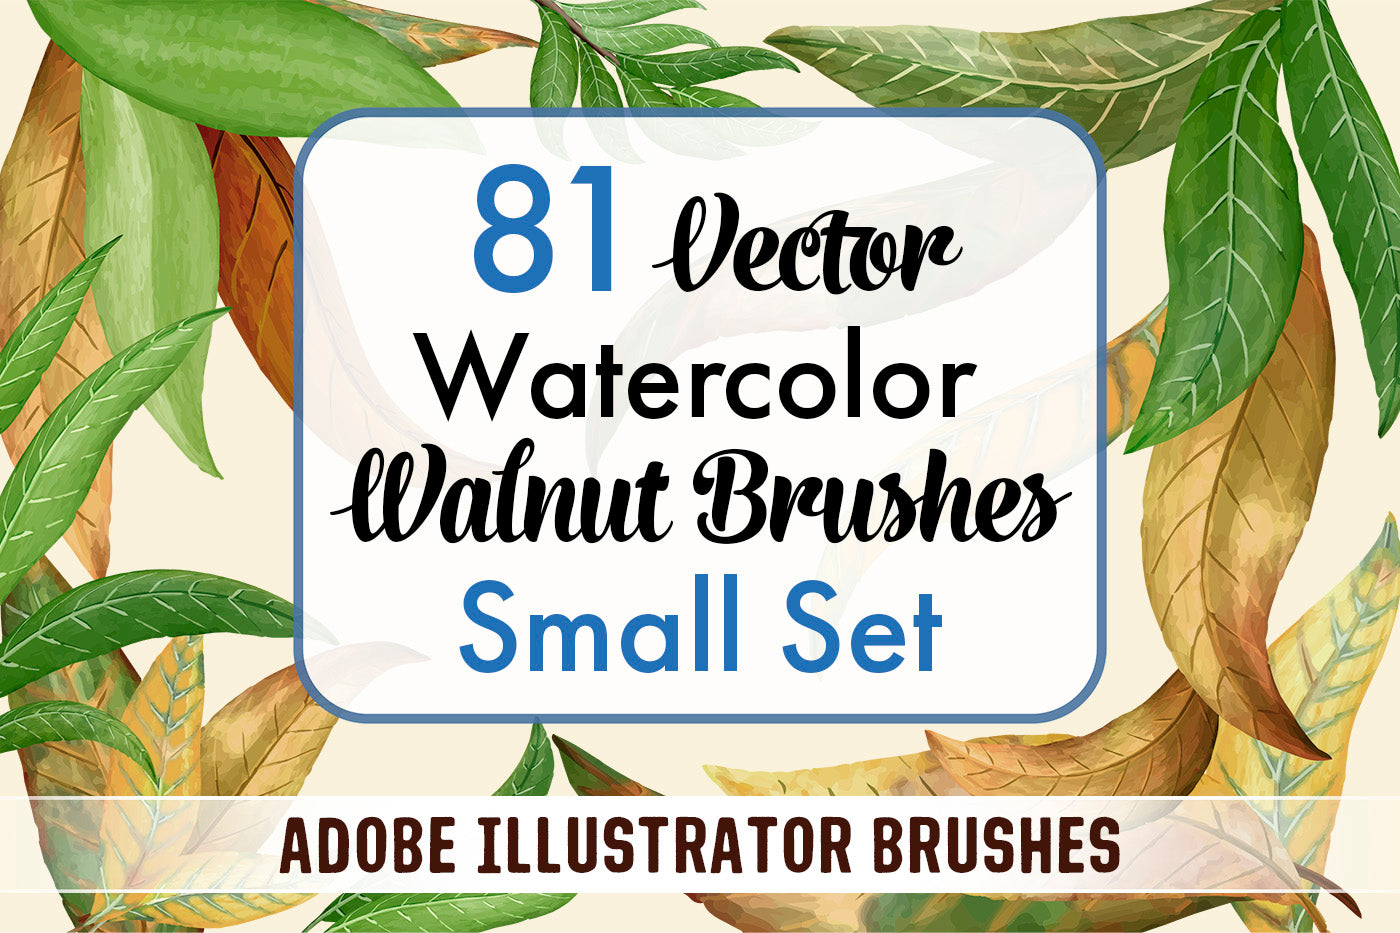 Bundle - Leaves Brushes Small Set - Adobe Illustrator Brushes